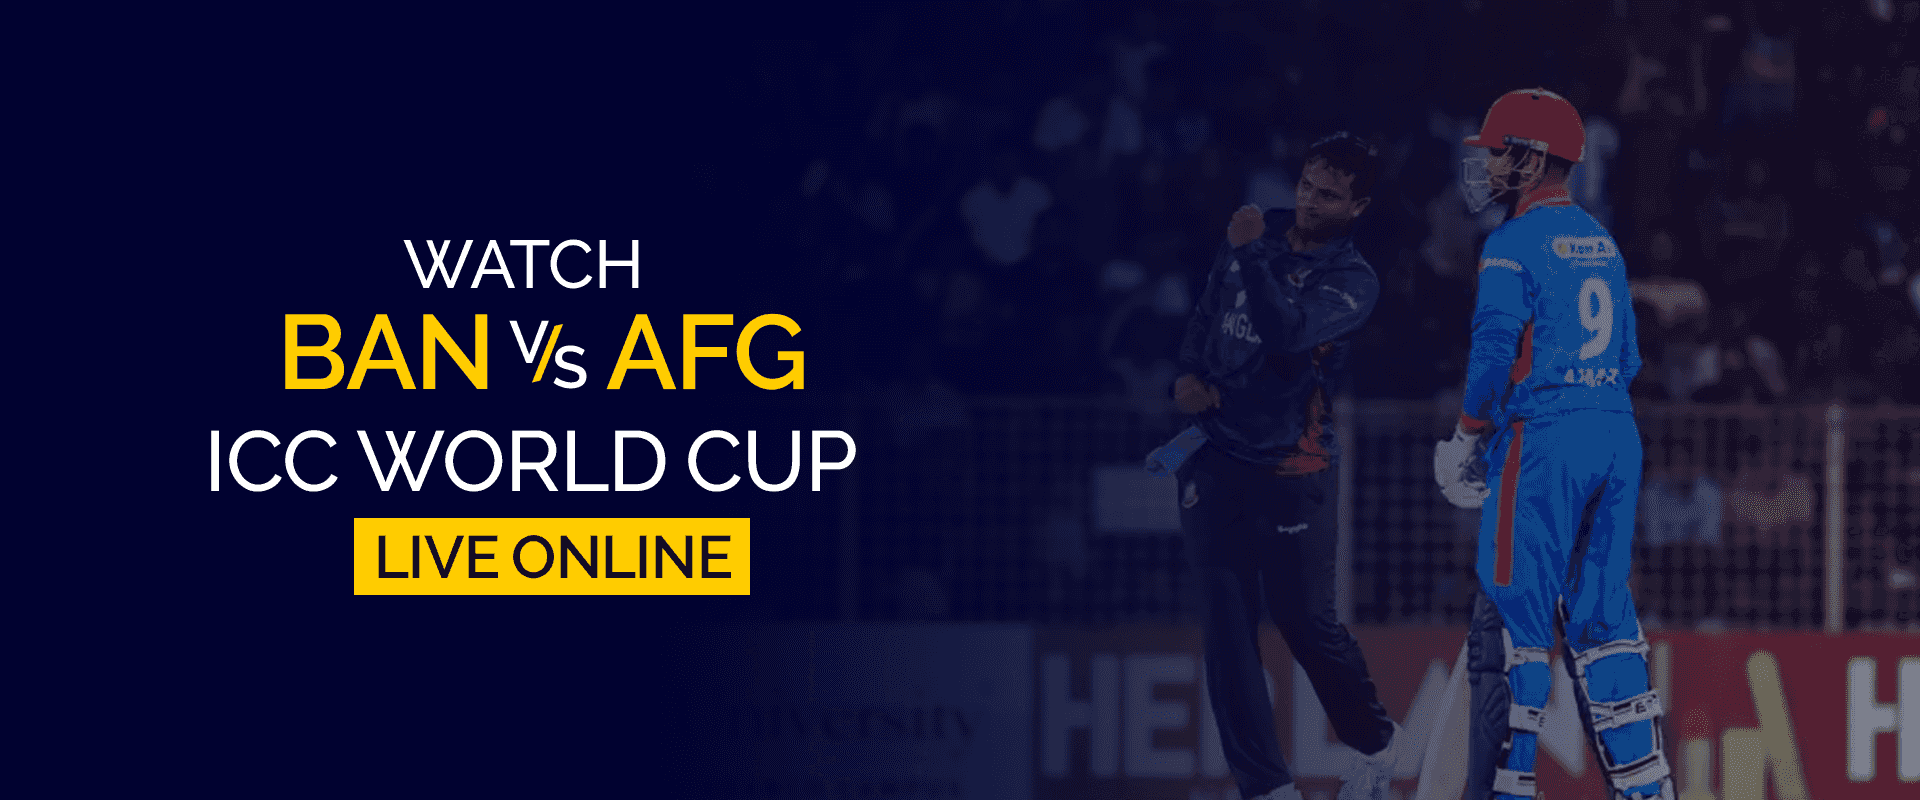 观看 BAN 对阵 AFG ICC 世界杯在线直播